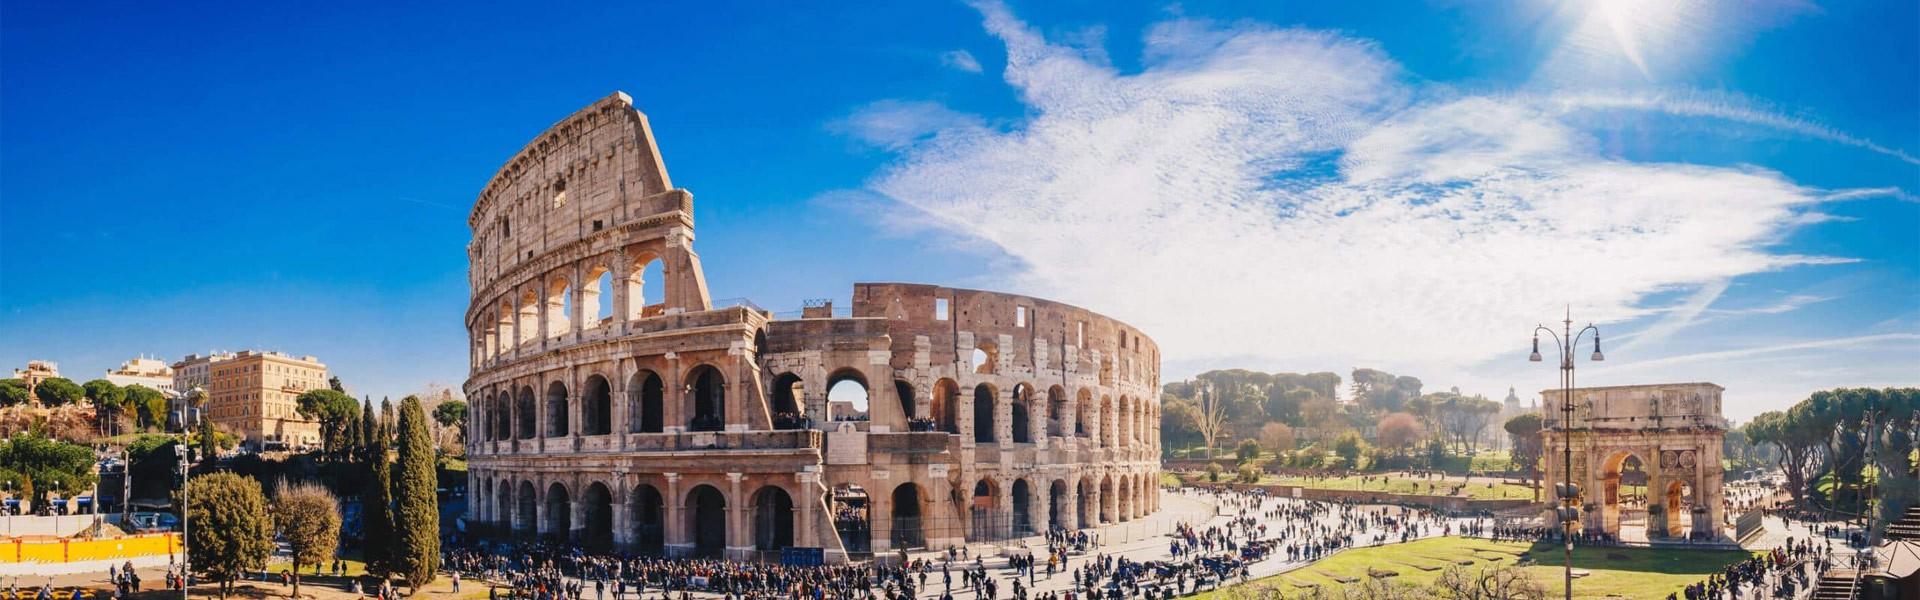 کولوسئوم  Colosseum